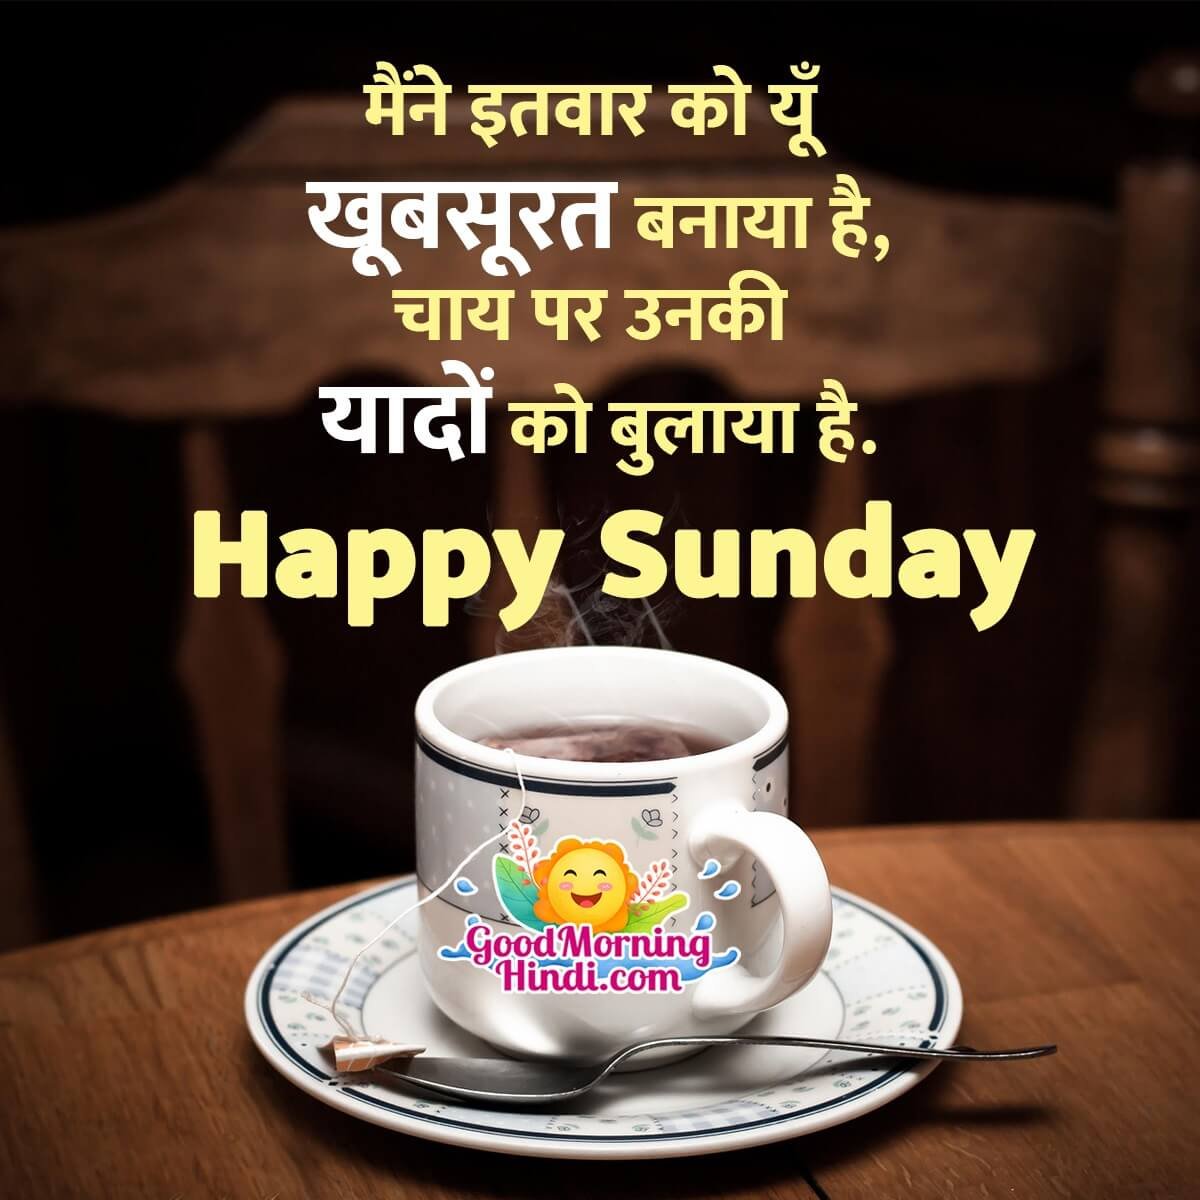 Happy Sunday Hindi Status Images